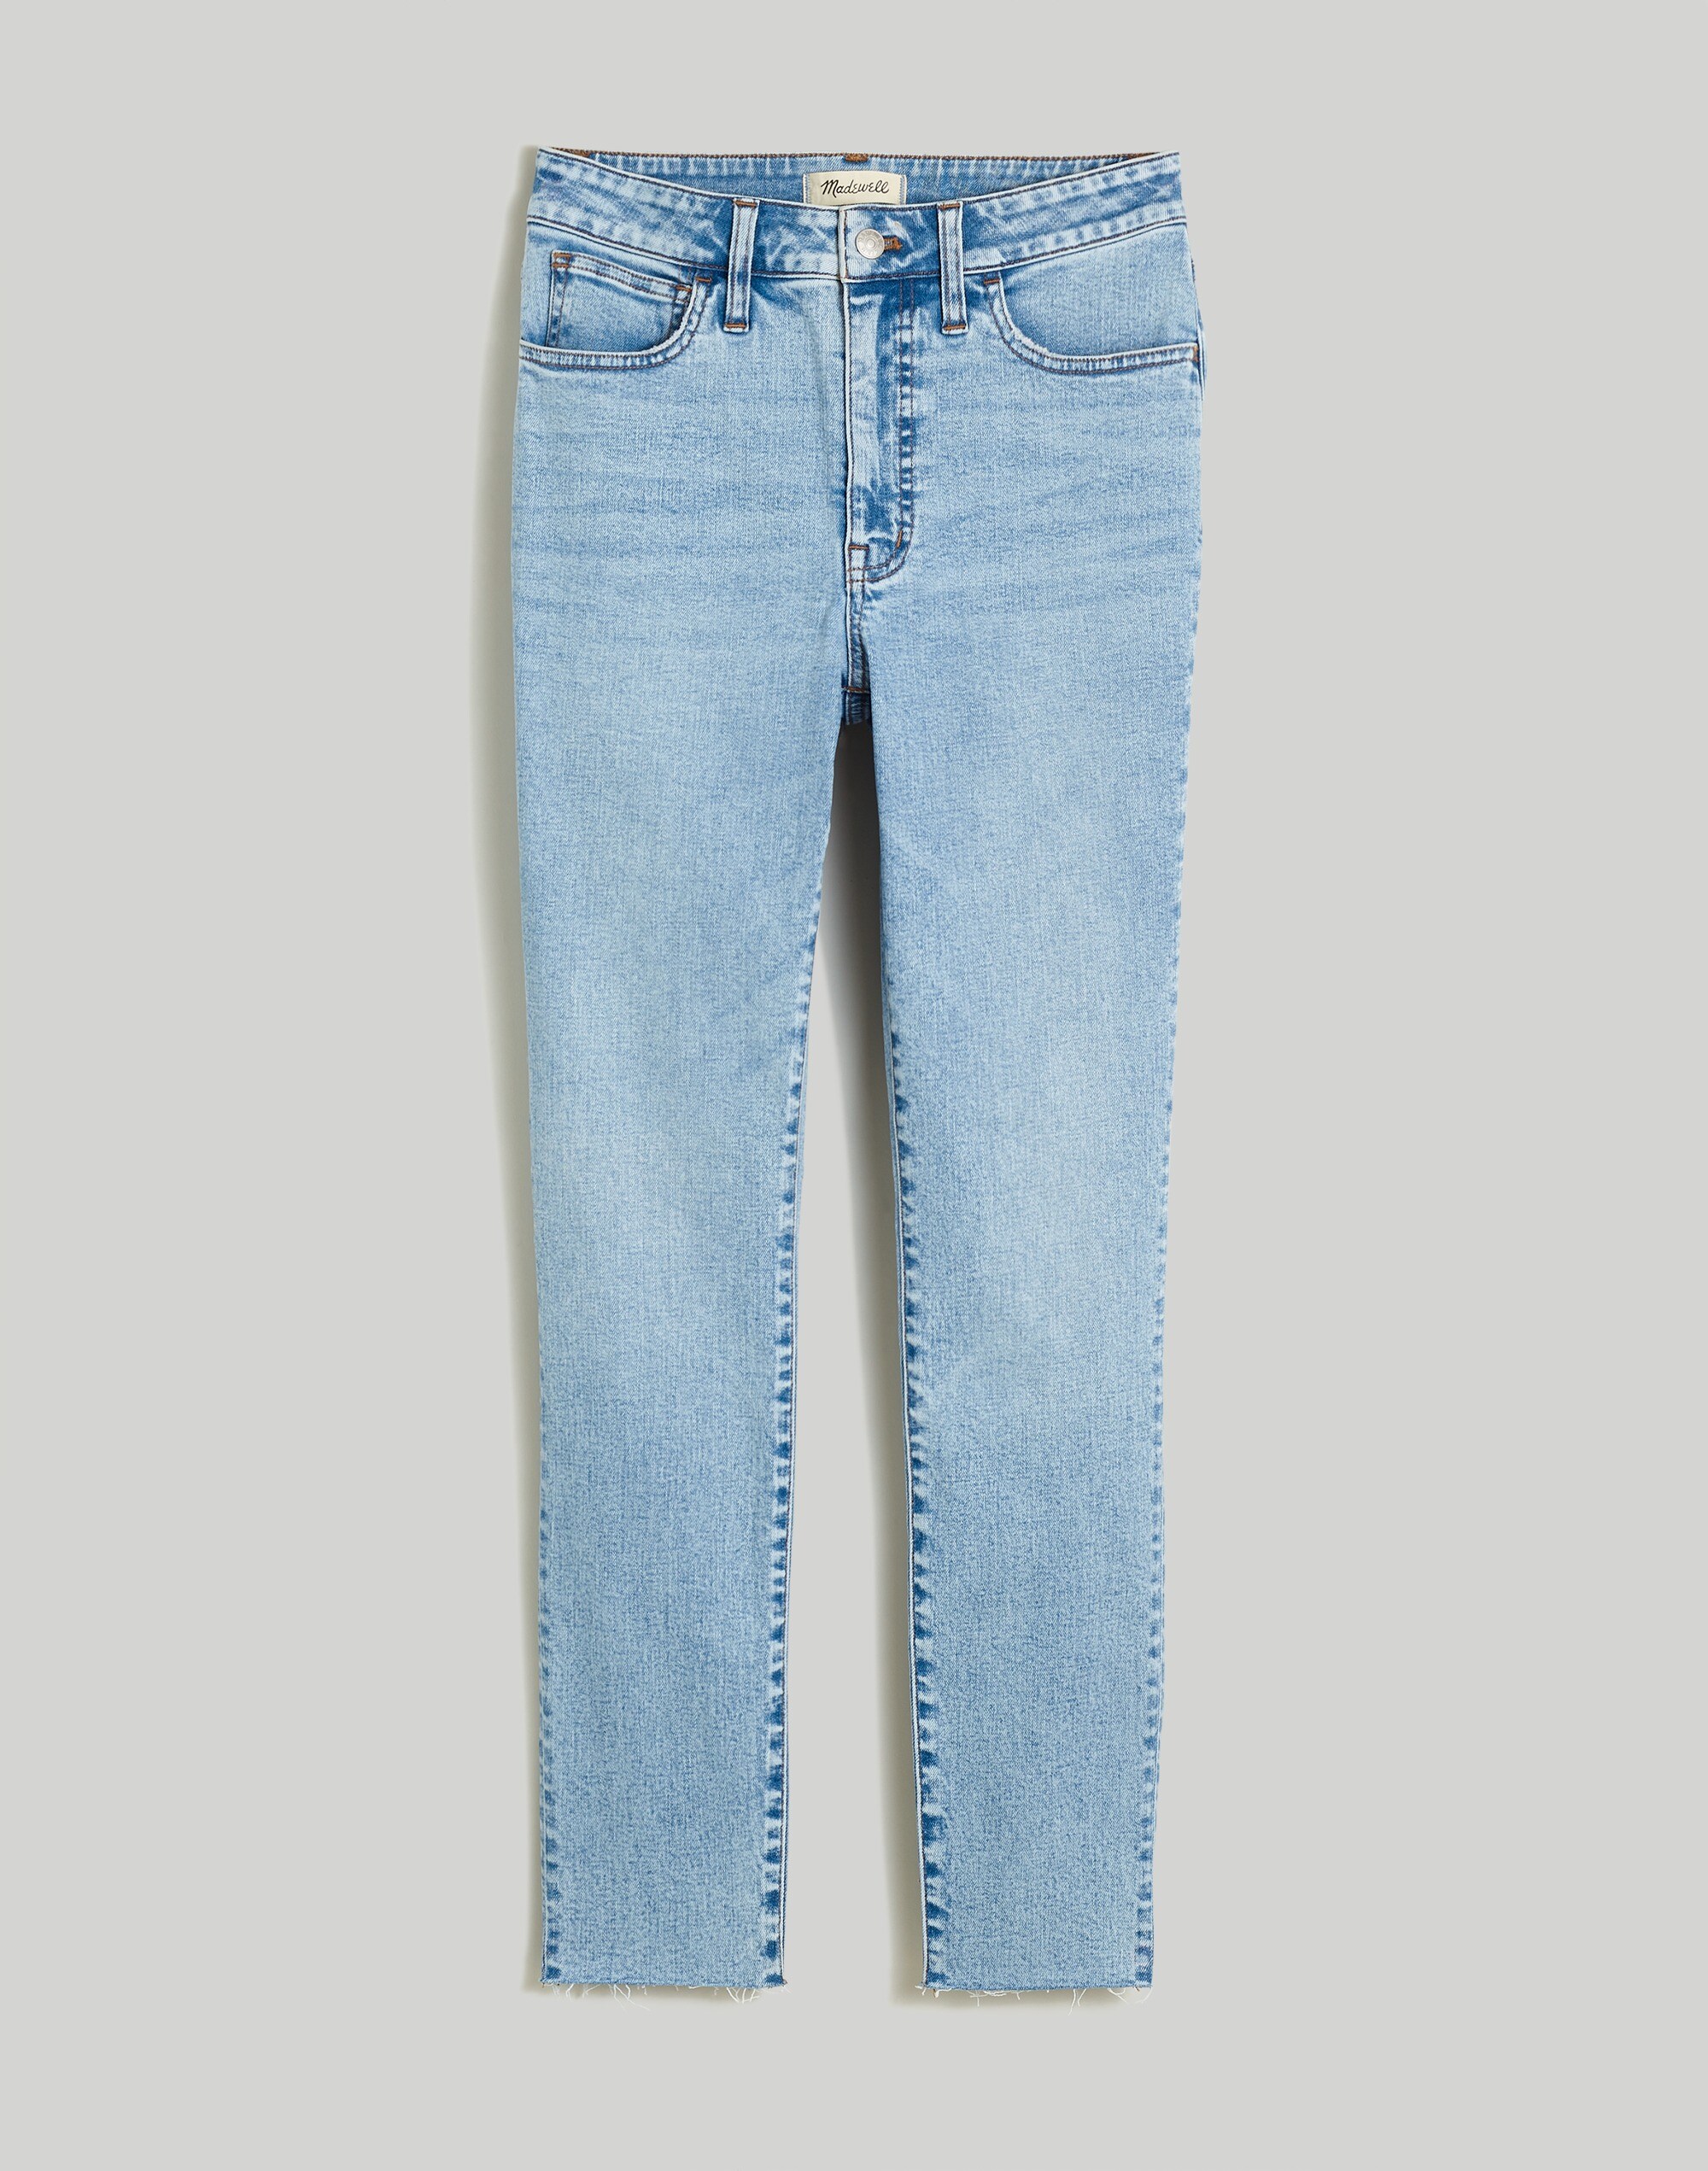 Plus Curvy 10" High-Rise Roadtripper Authentic Skinny Jeans in Bruening Wash